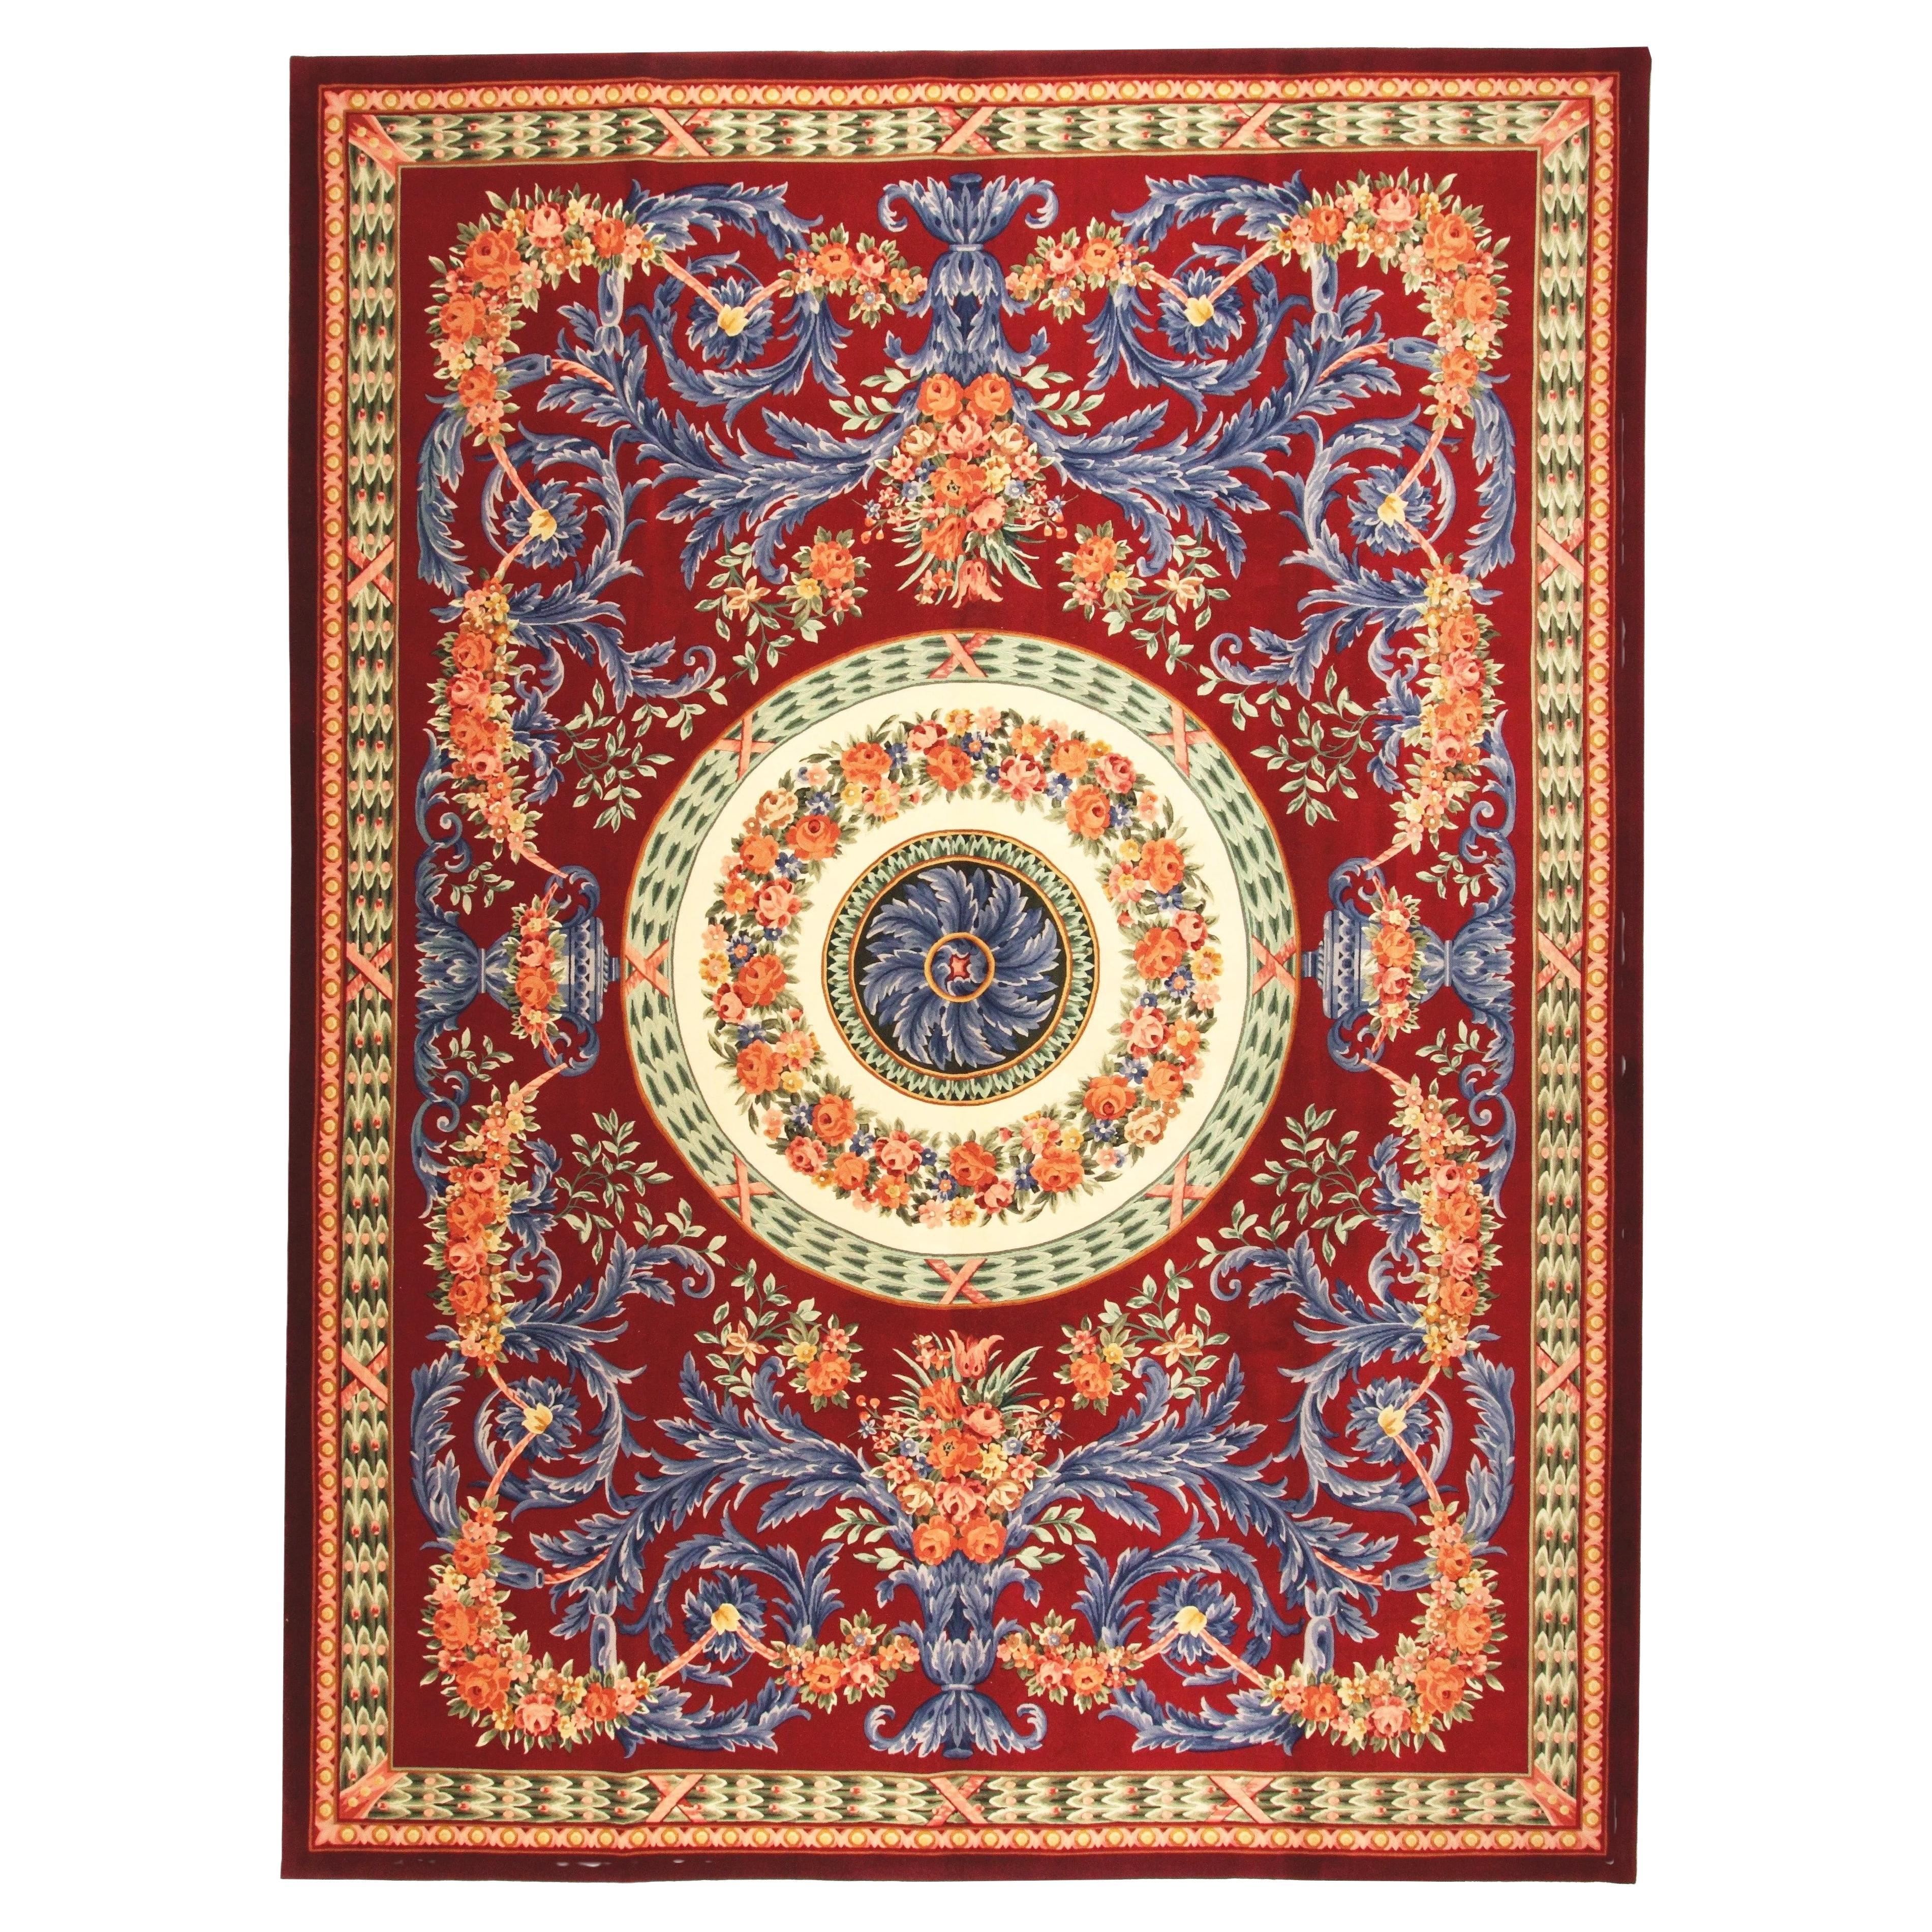 VIA COMO 'Venetian Rosso' Hand Knotted Wool & Silk Rug Carpet RARE 10x13 Baroque